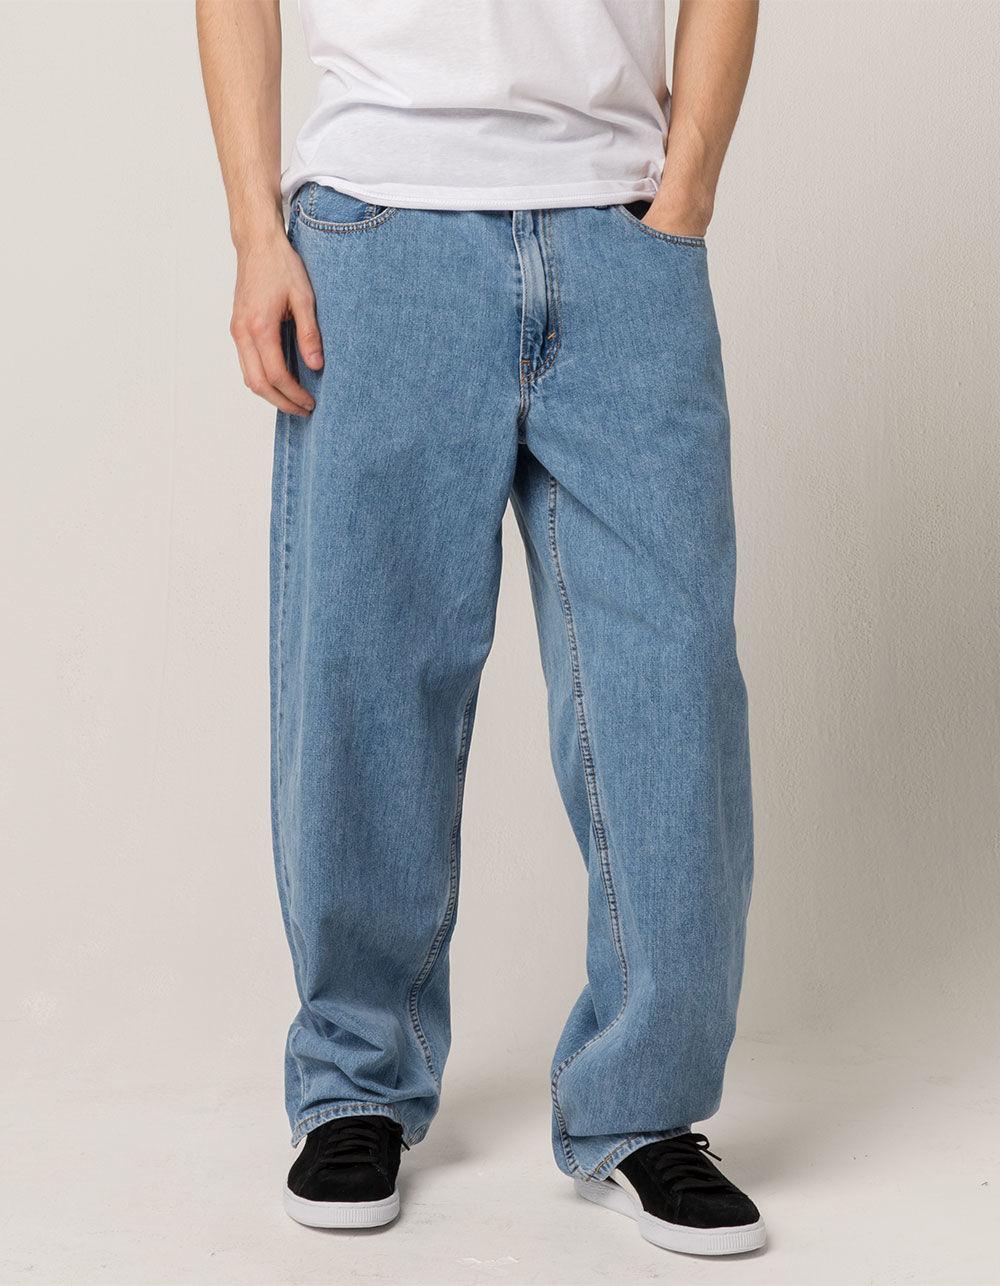 Lyst - Levi'S Basket Mens Baggy Jeans in Blue for Men